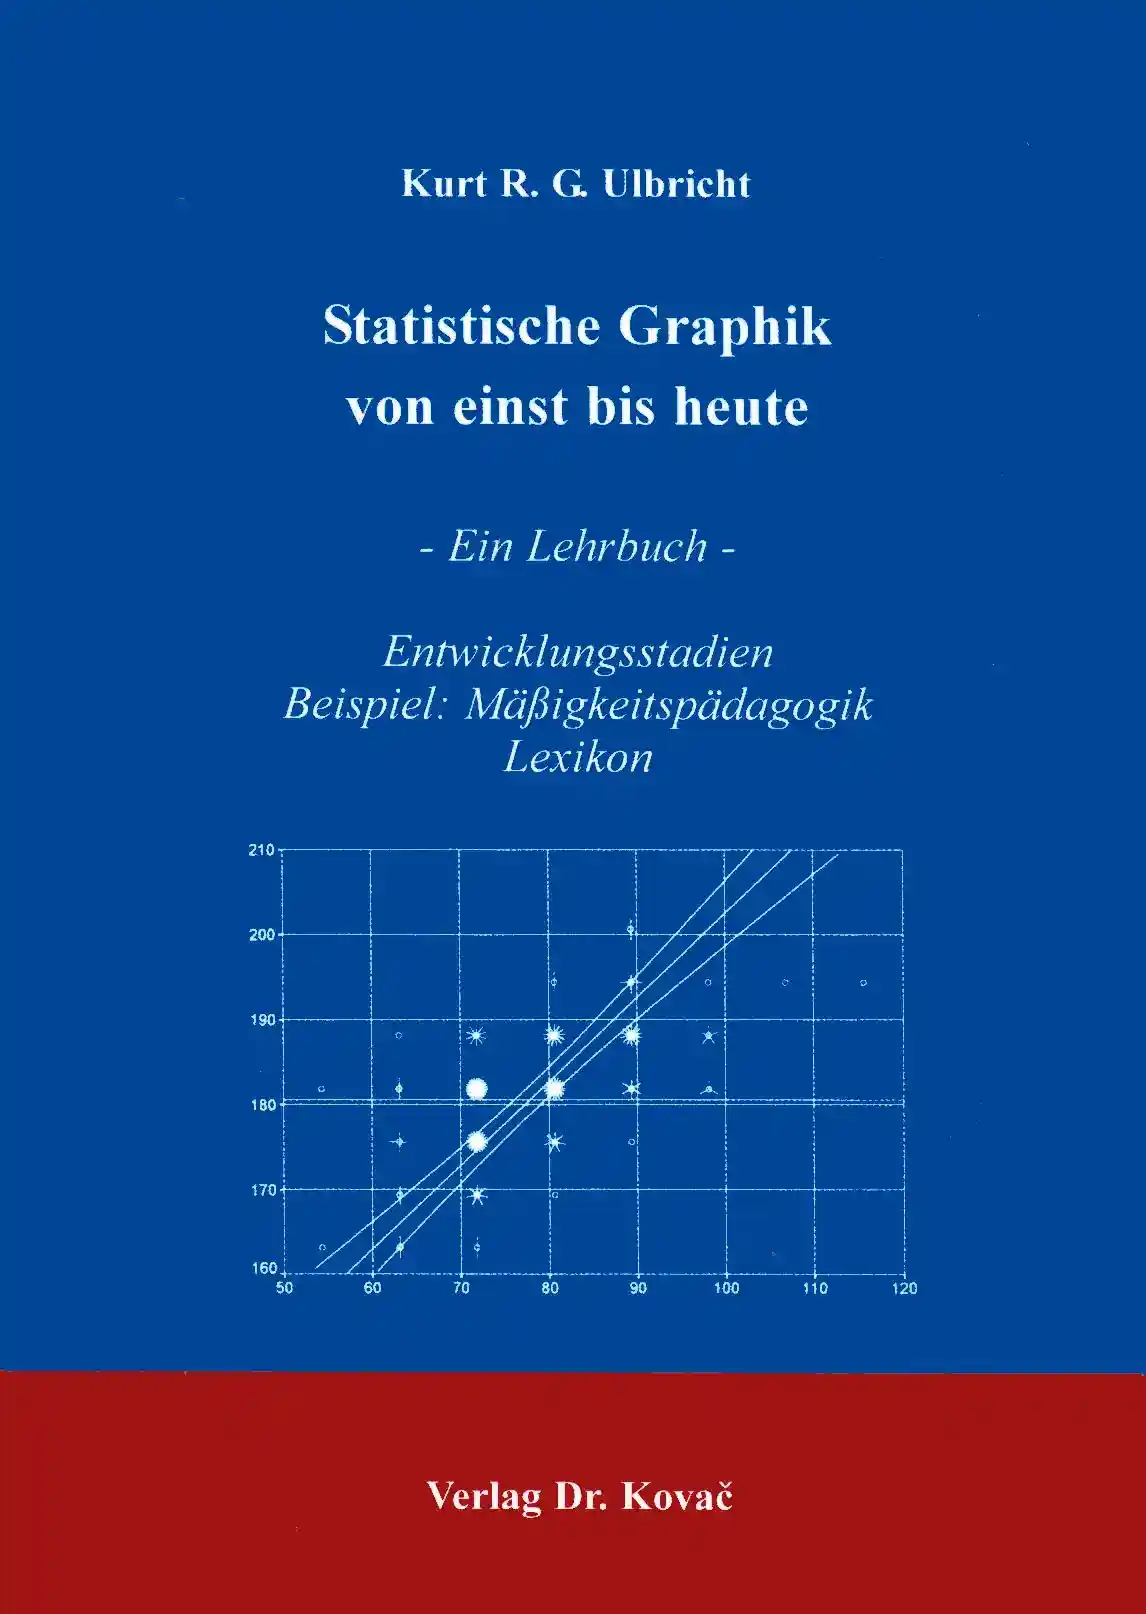 Statistische Graphik von einst bis heute (Forschungsarbeit)